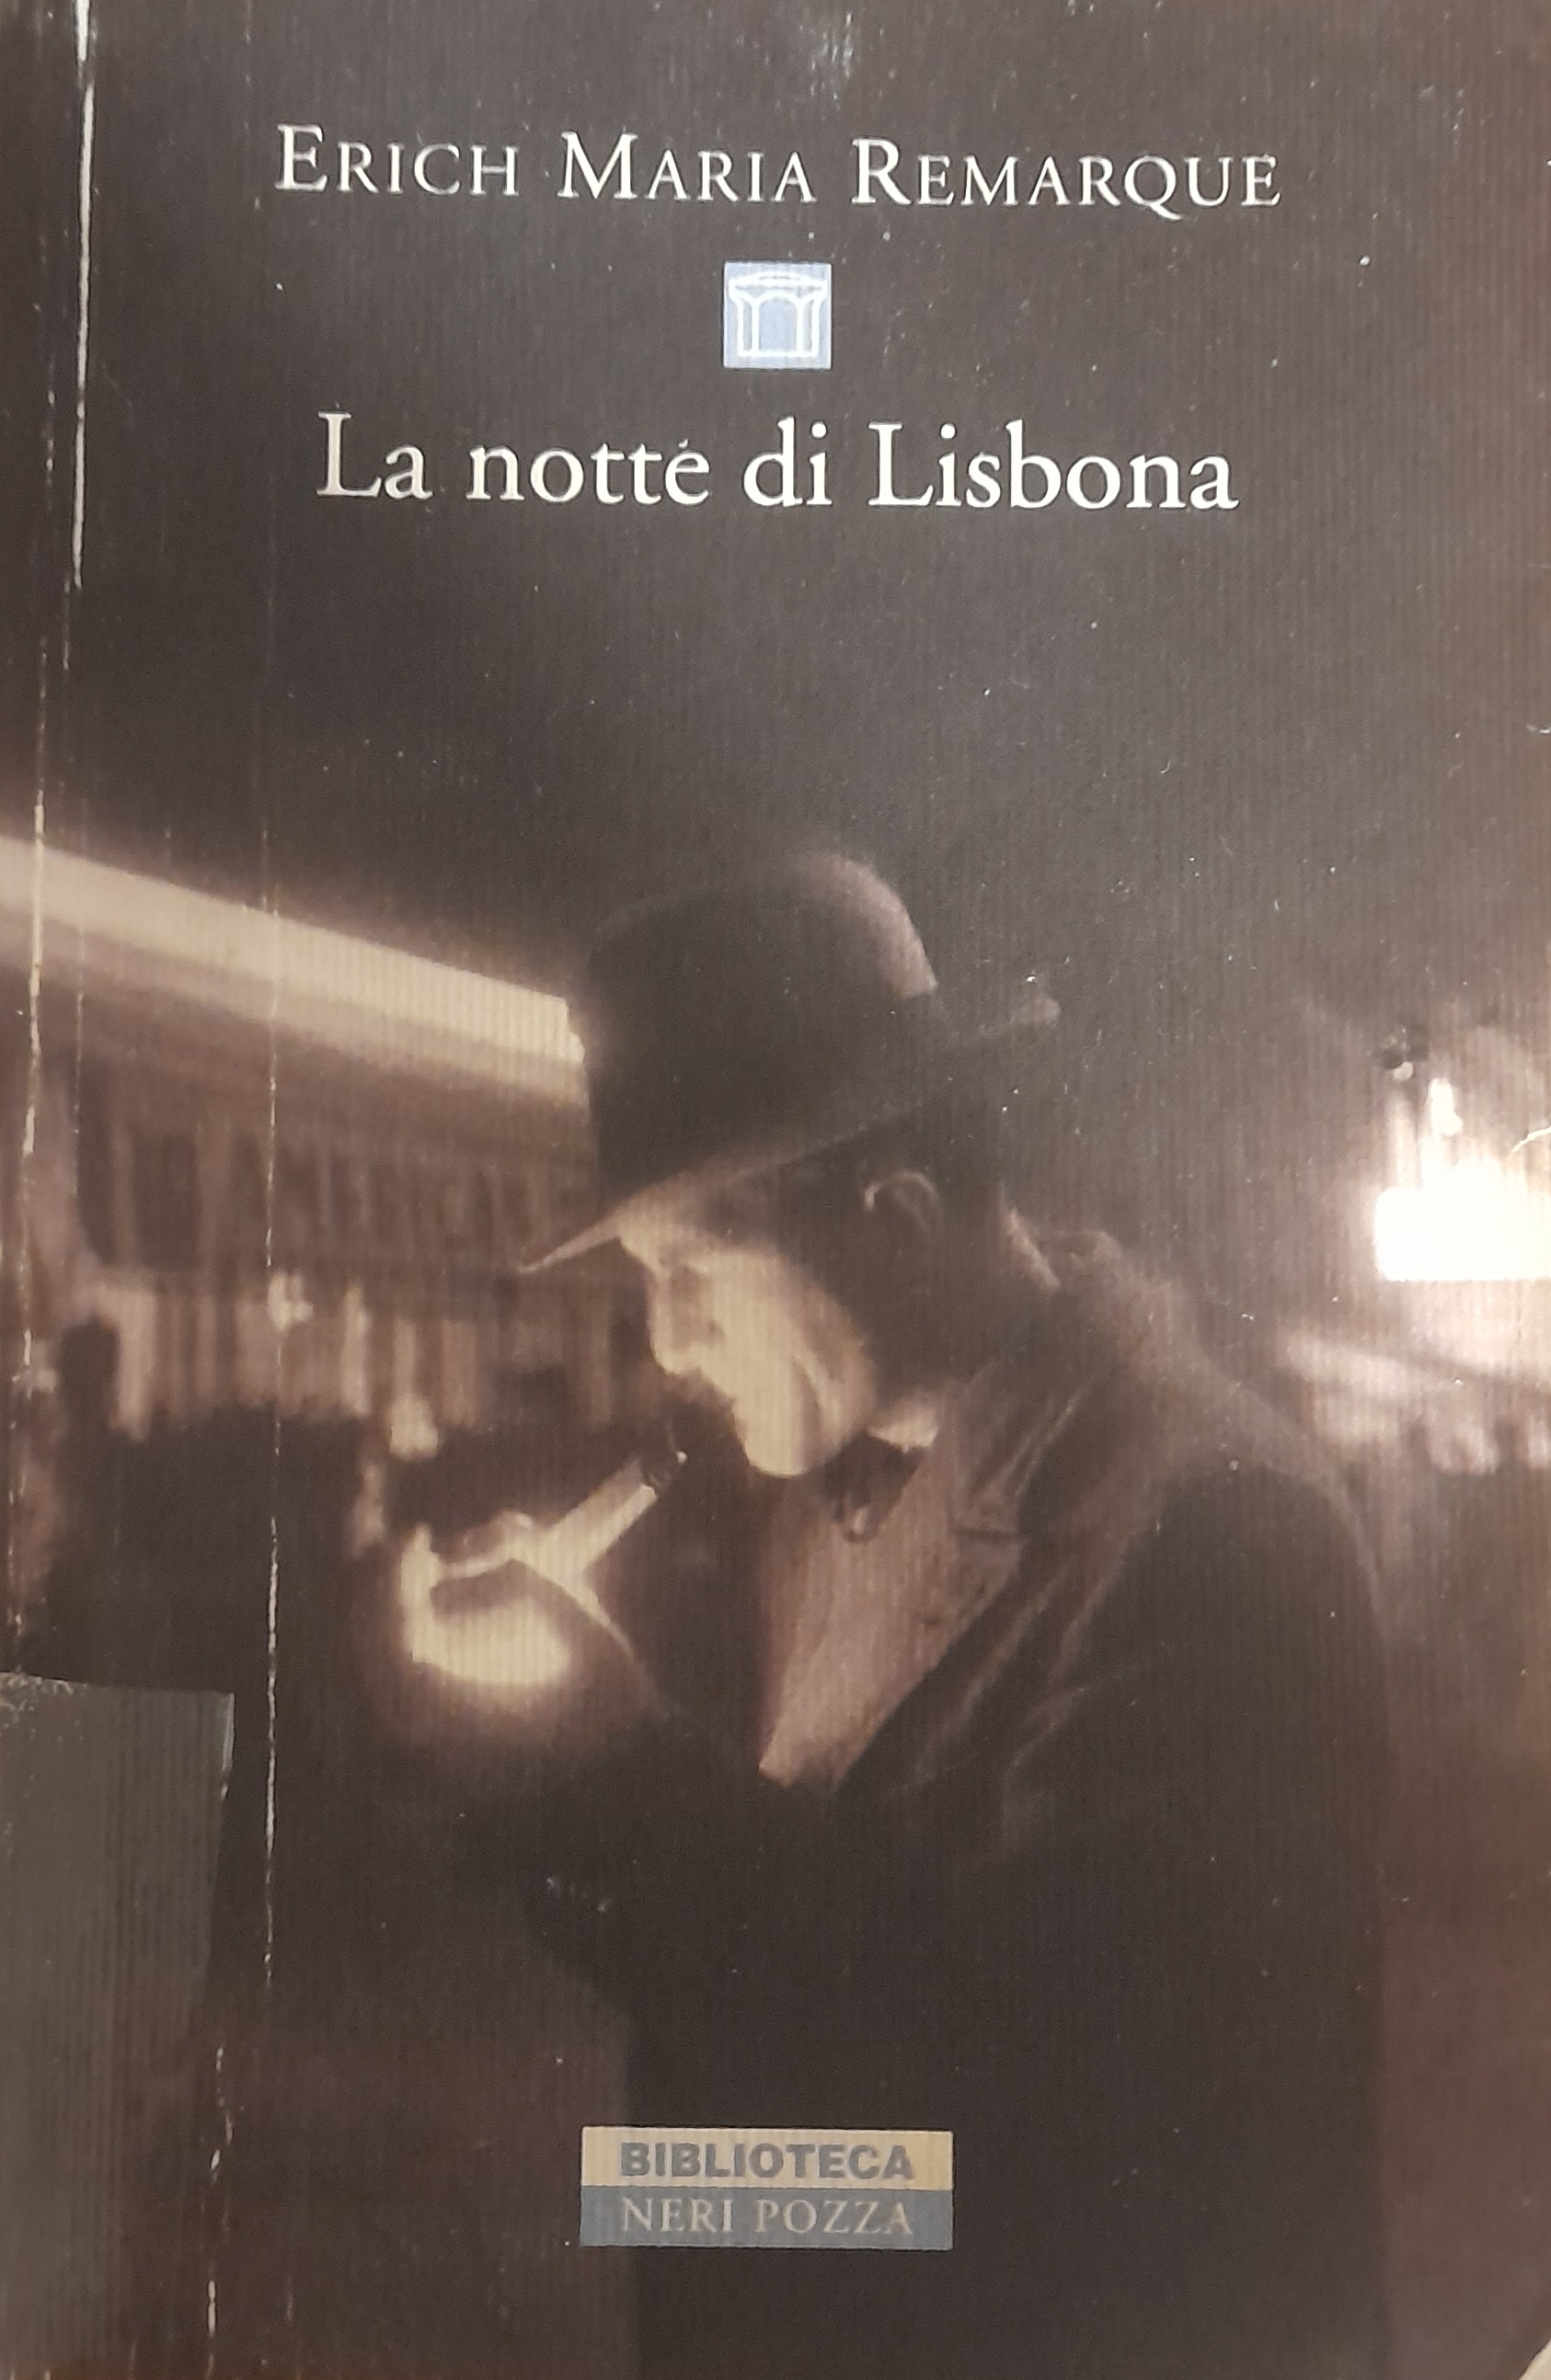 Erich Maria Remarque: La notte di Lisbona (Paperback, italiano language, 2015, Neri Pozza)